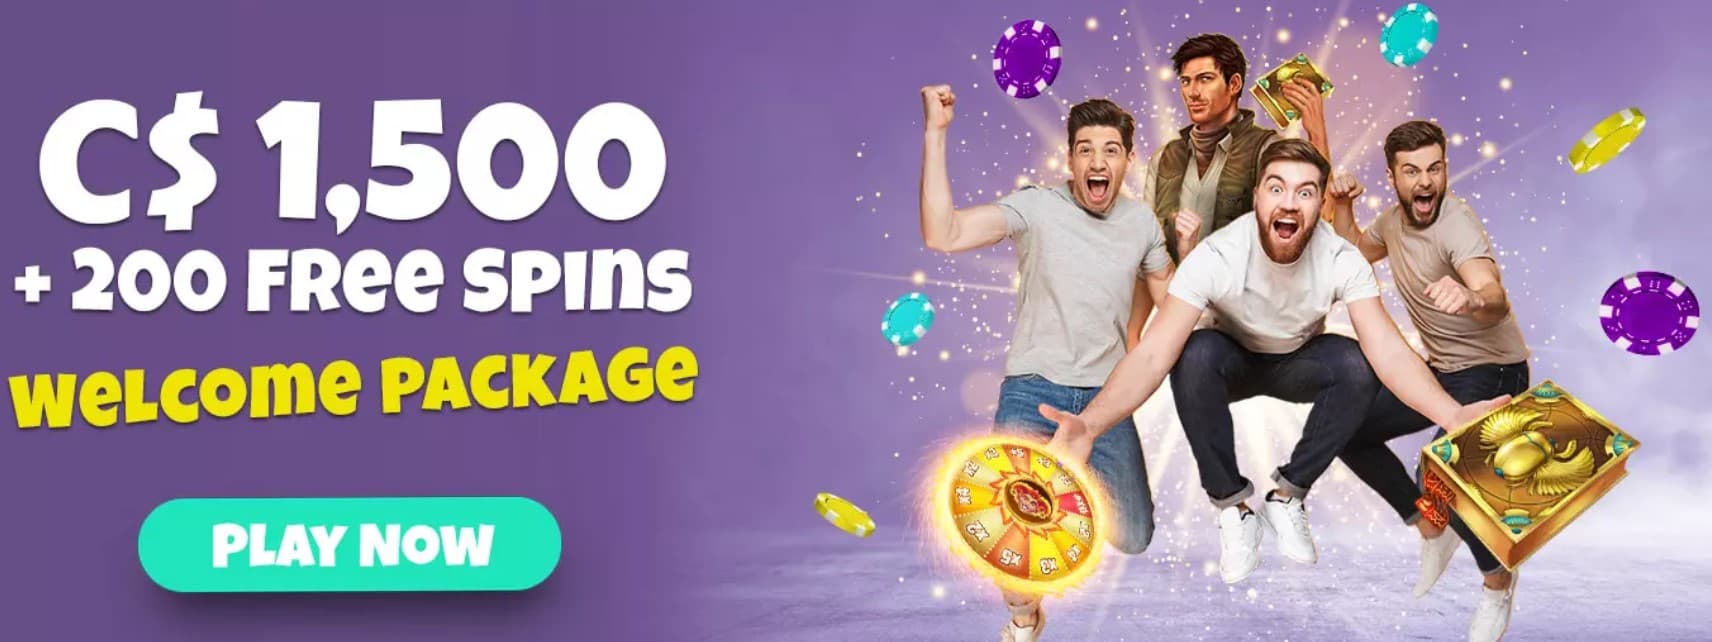 spin shake casino welcome bonus